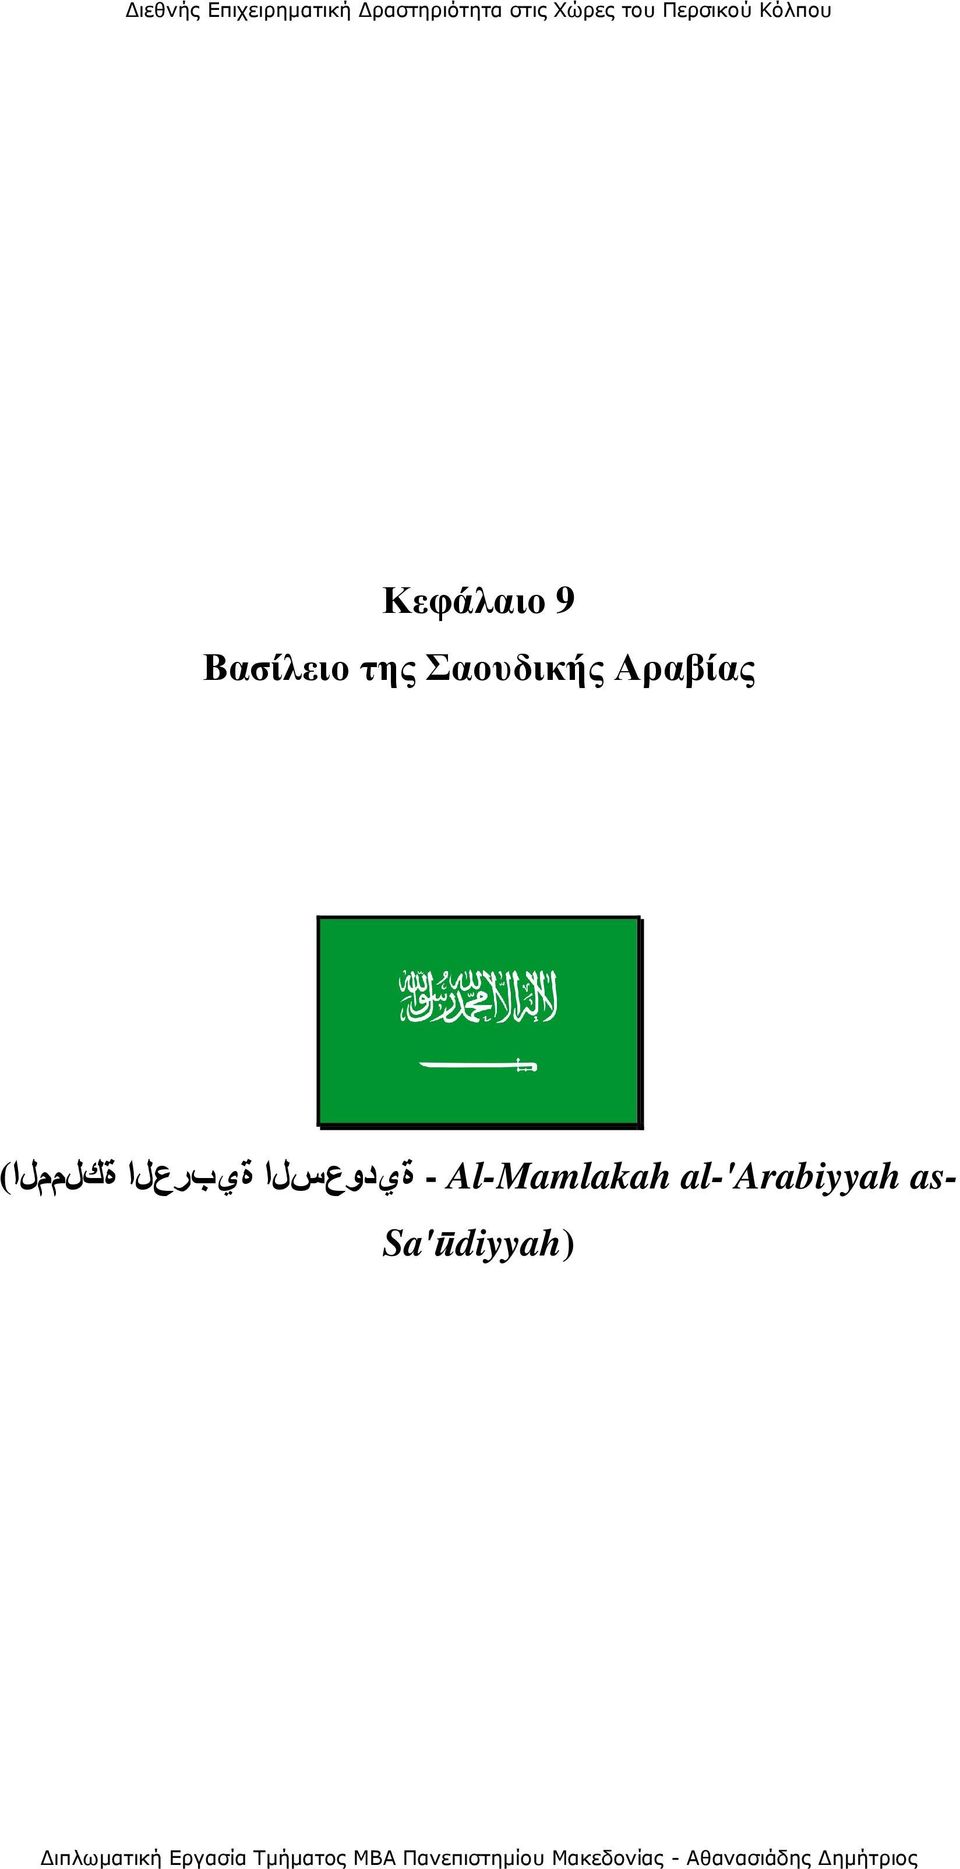 Al-Mamlakah al-'arabiyyah